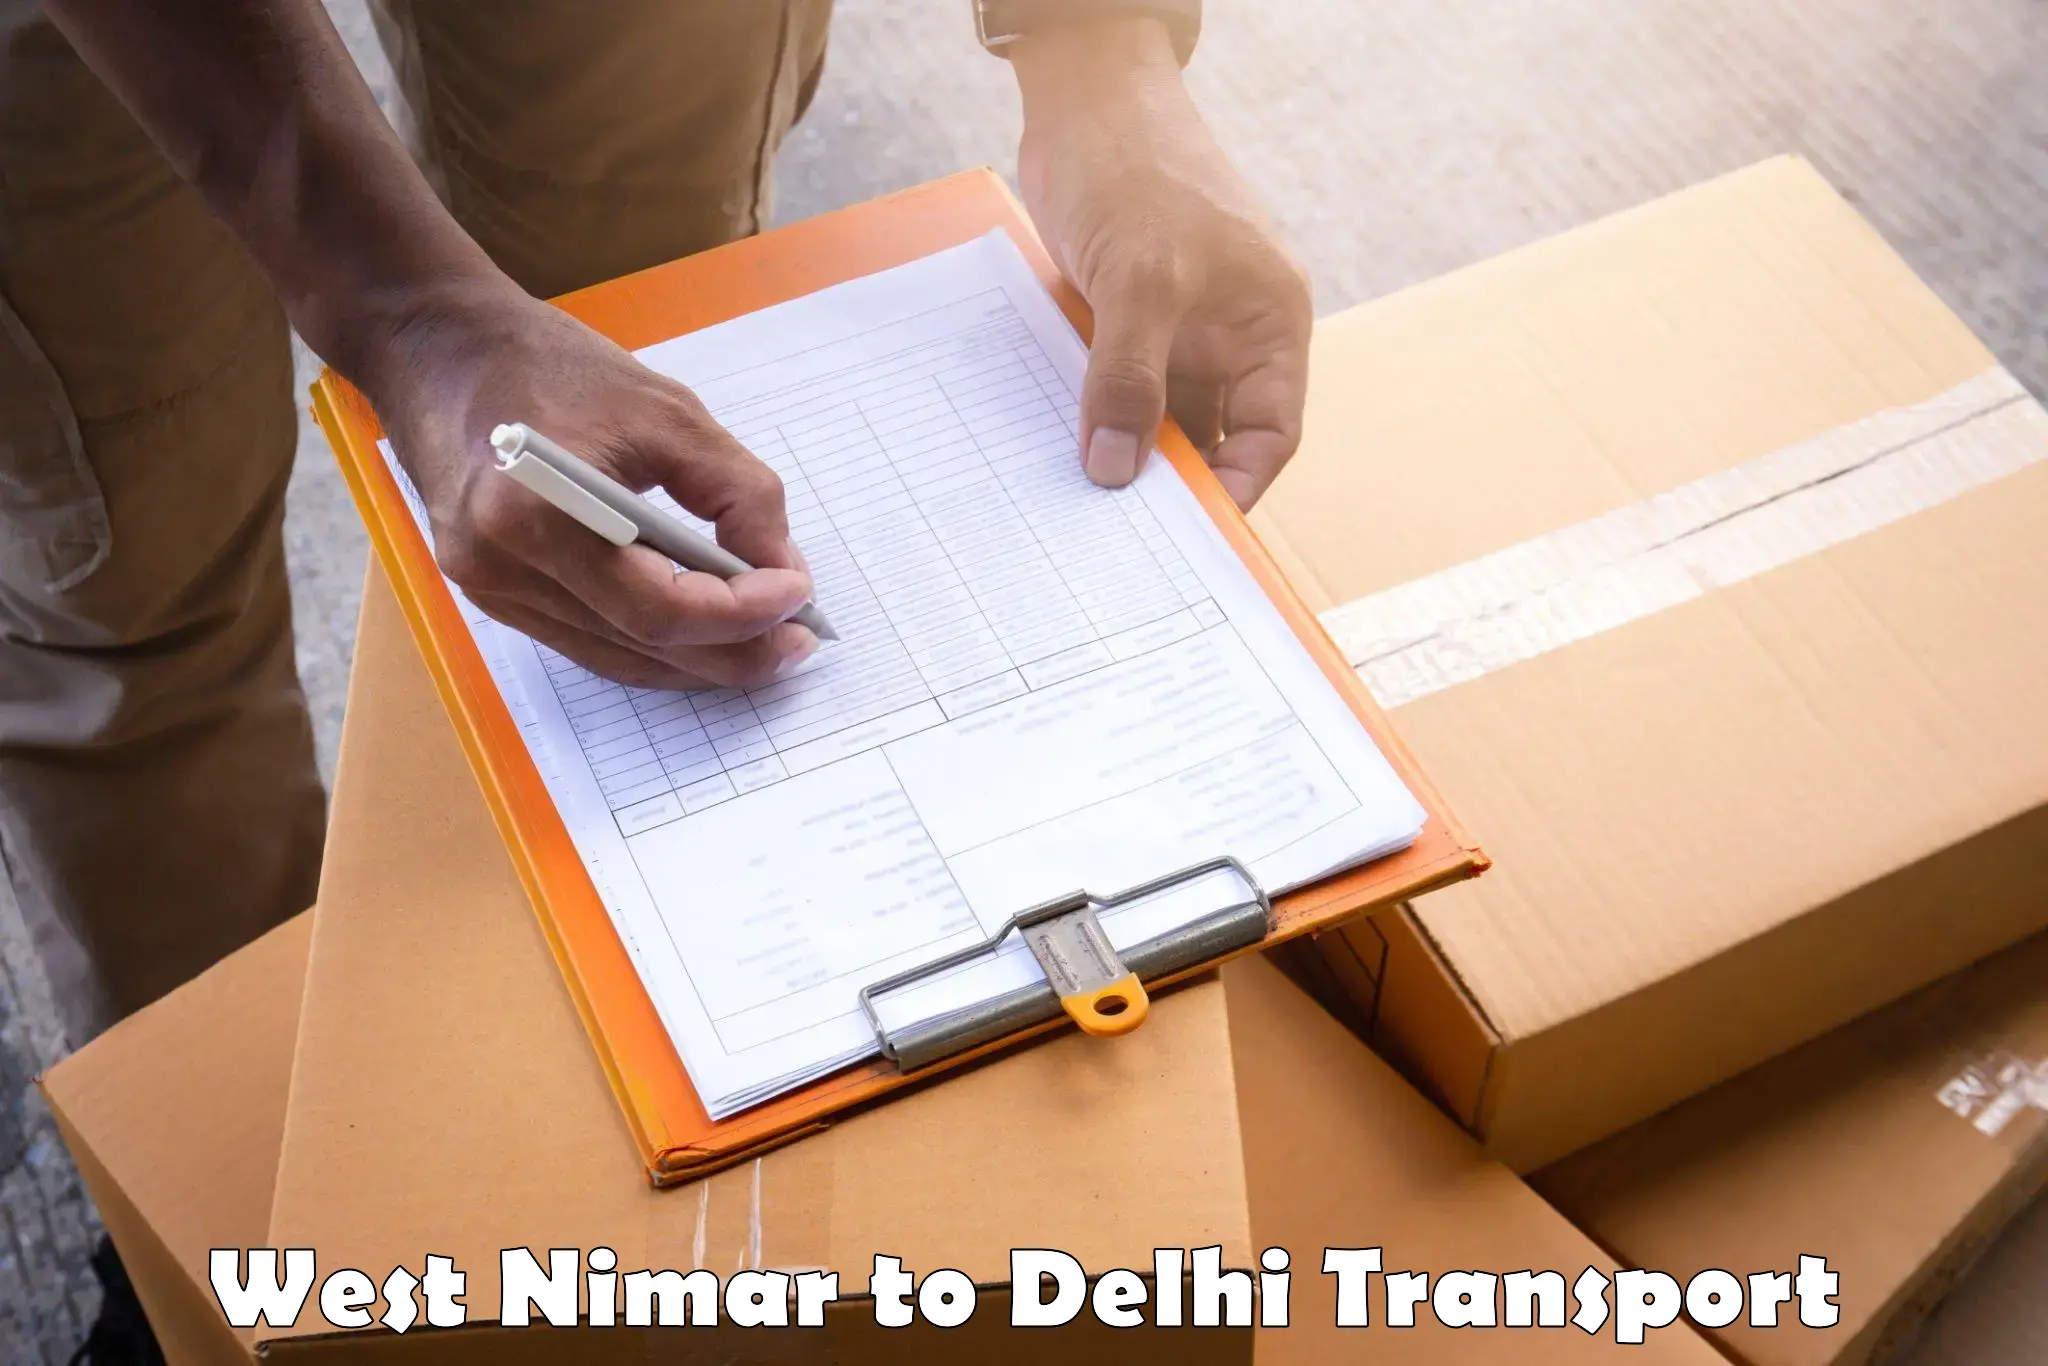 Two wheeler transport services West Nimar to Jamia Millia Islamia New Delhi